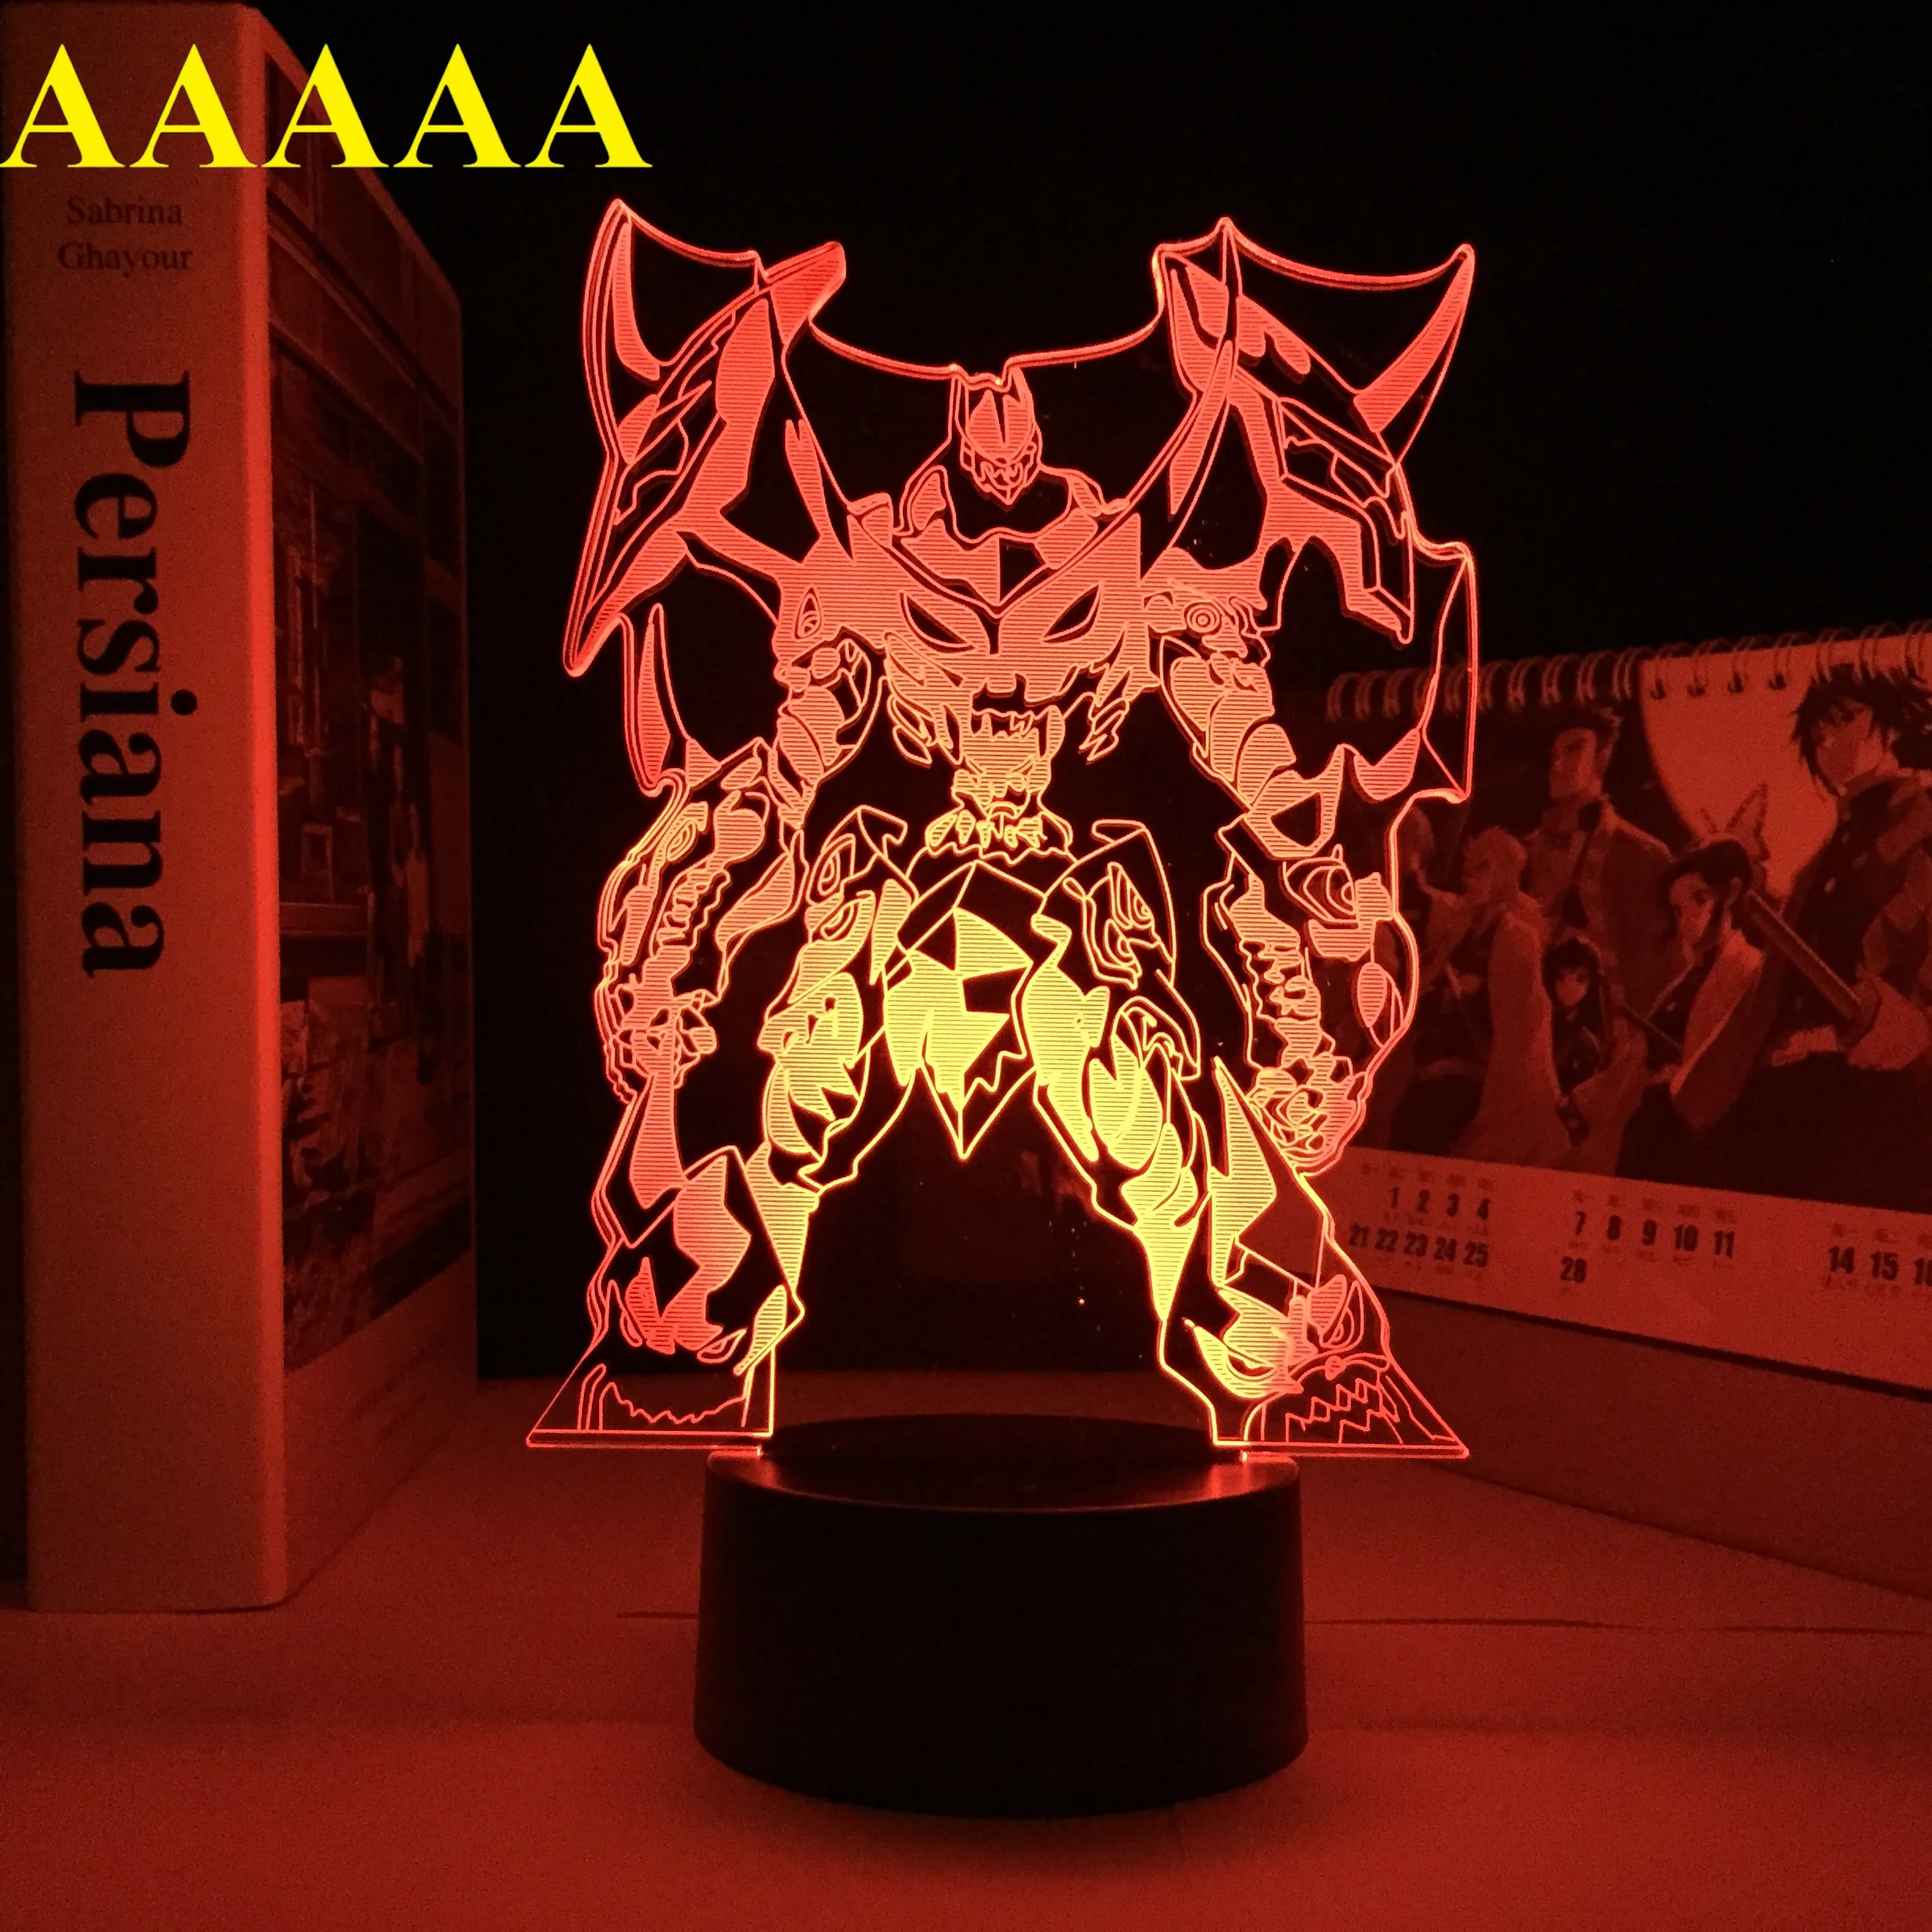 

Tengen Toppa Light Gurren Lagann Gadget Gurren Lagann Anime Robot LED Night Light for Bedroom Decor Lamp Birthday Gift Night